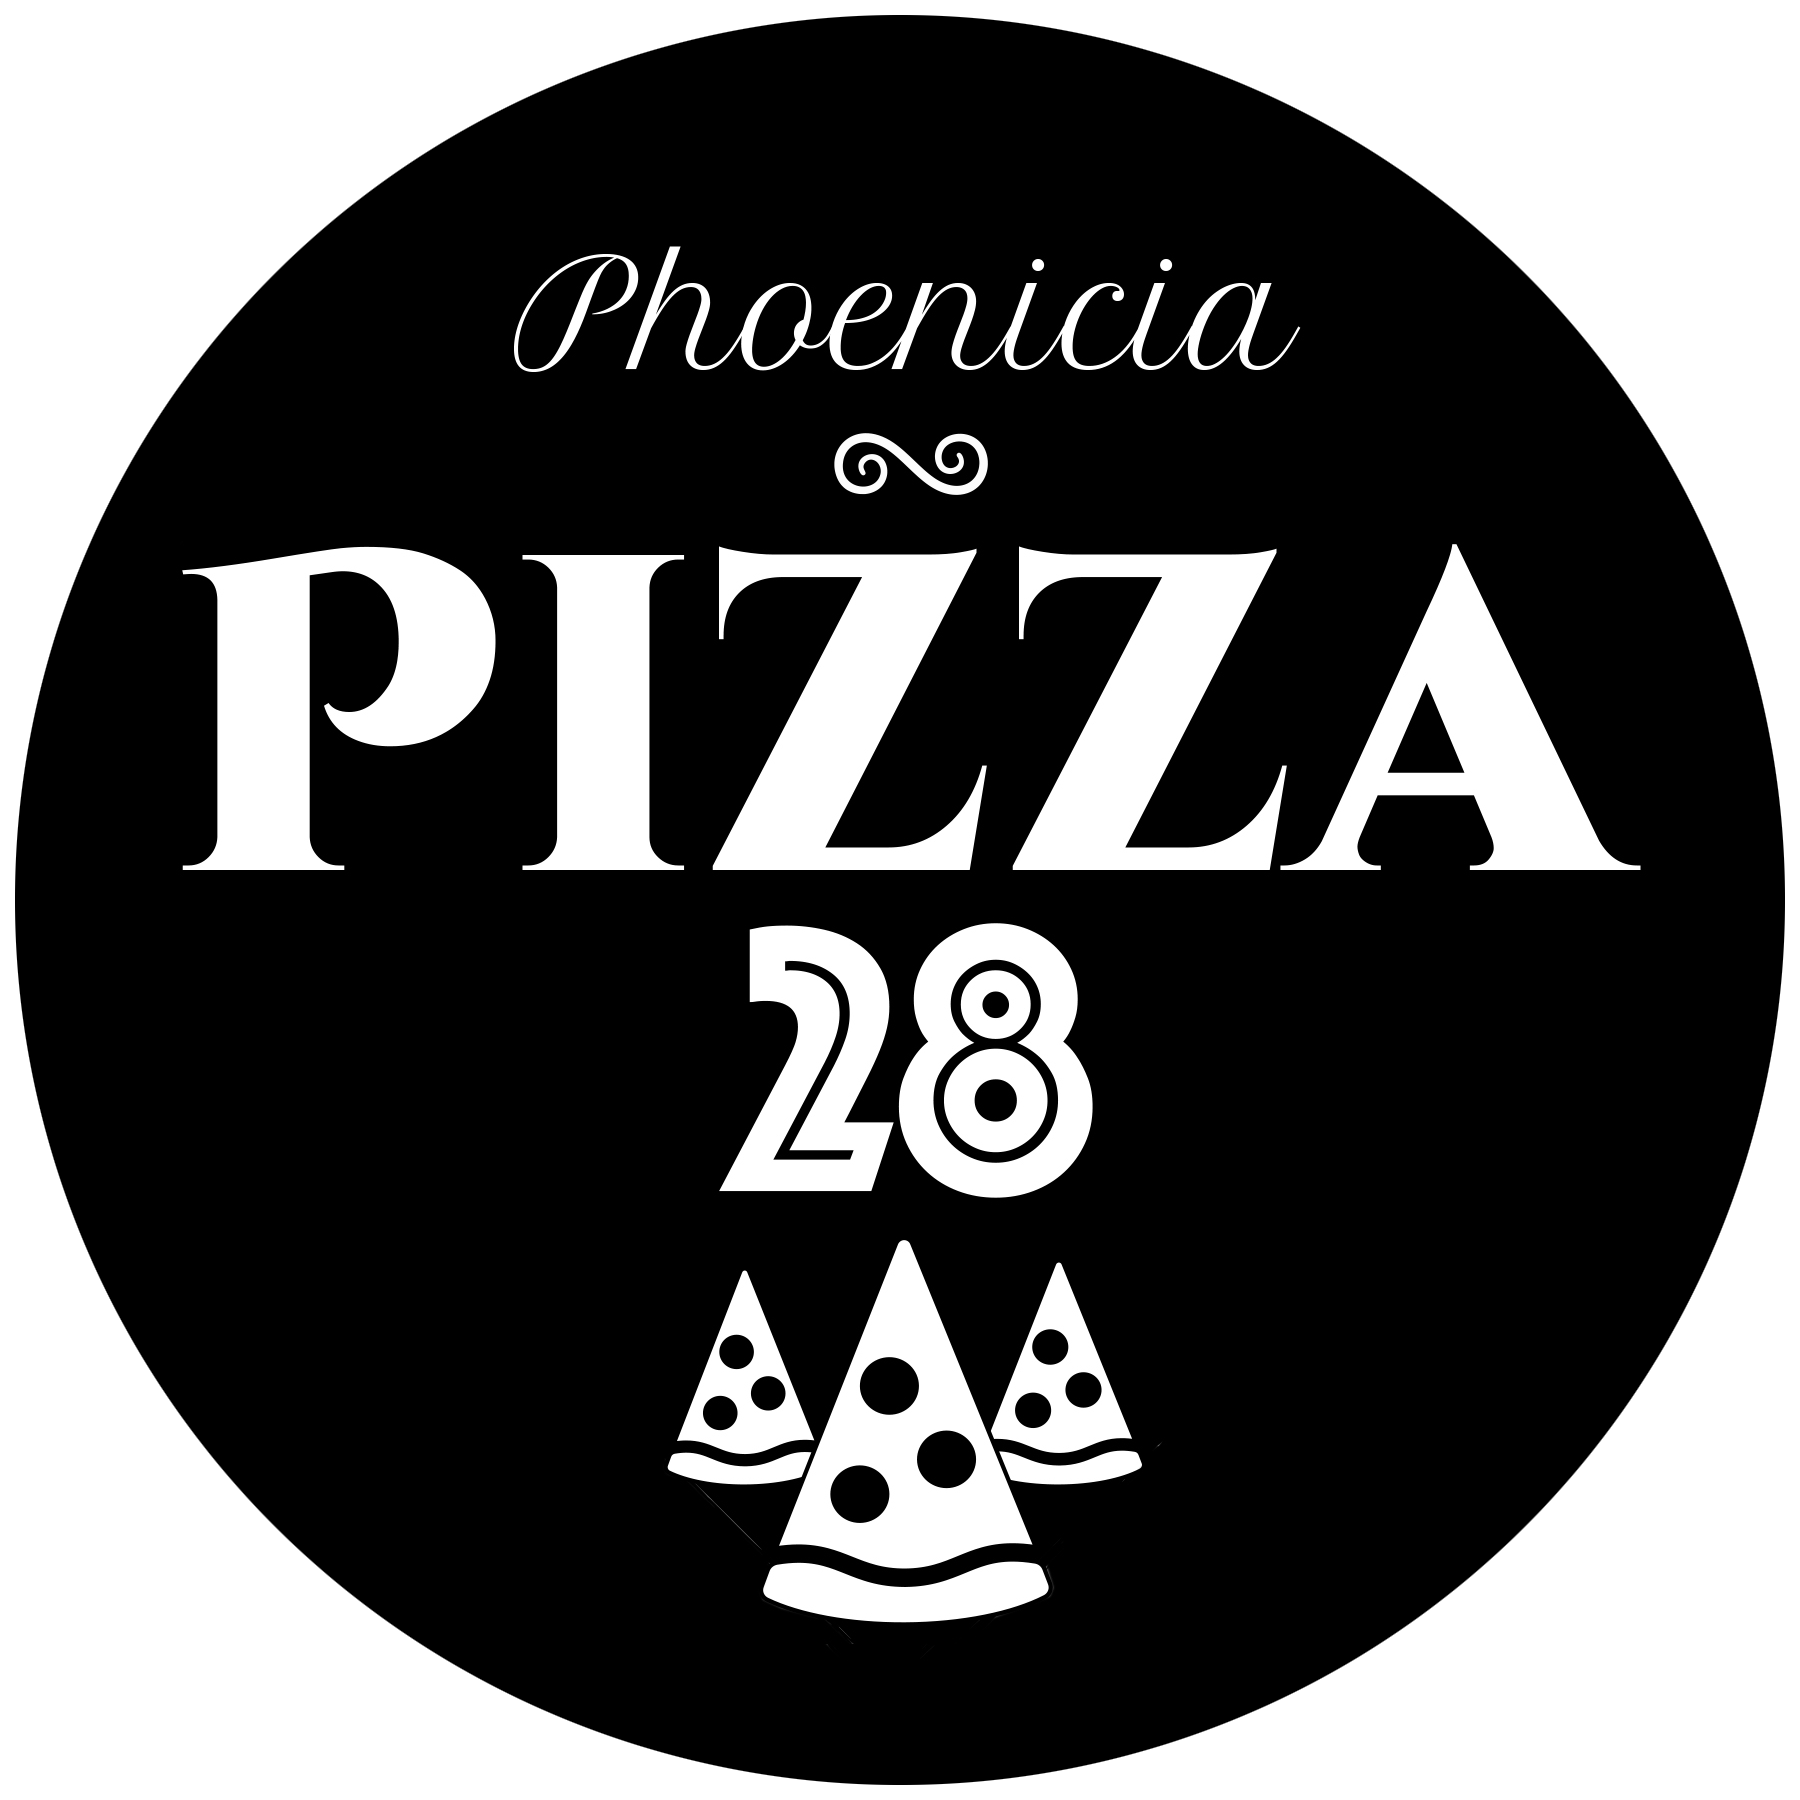 Phoenicia Pizza 28